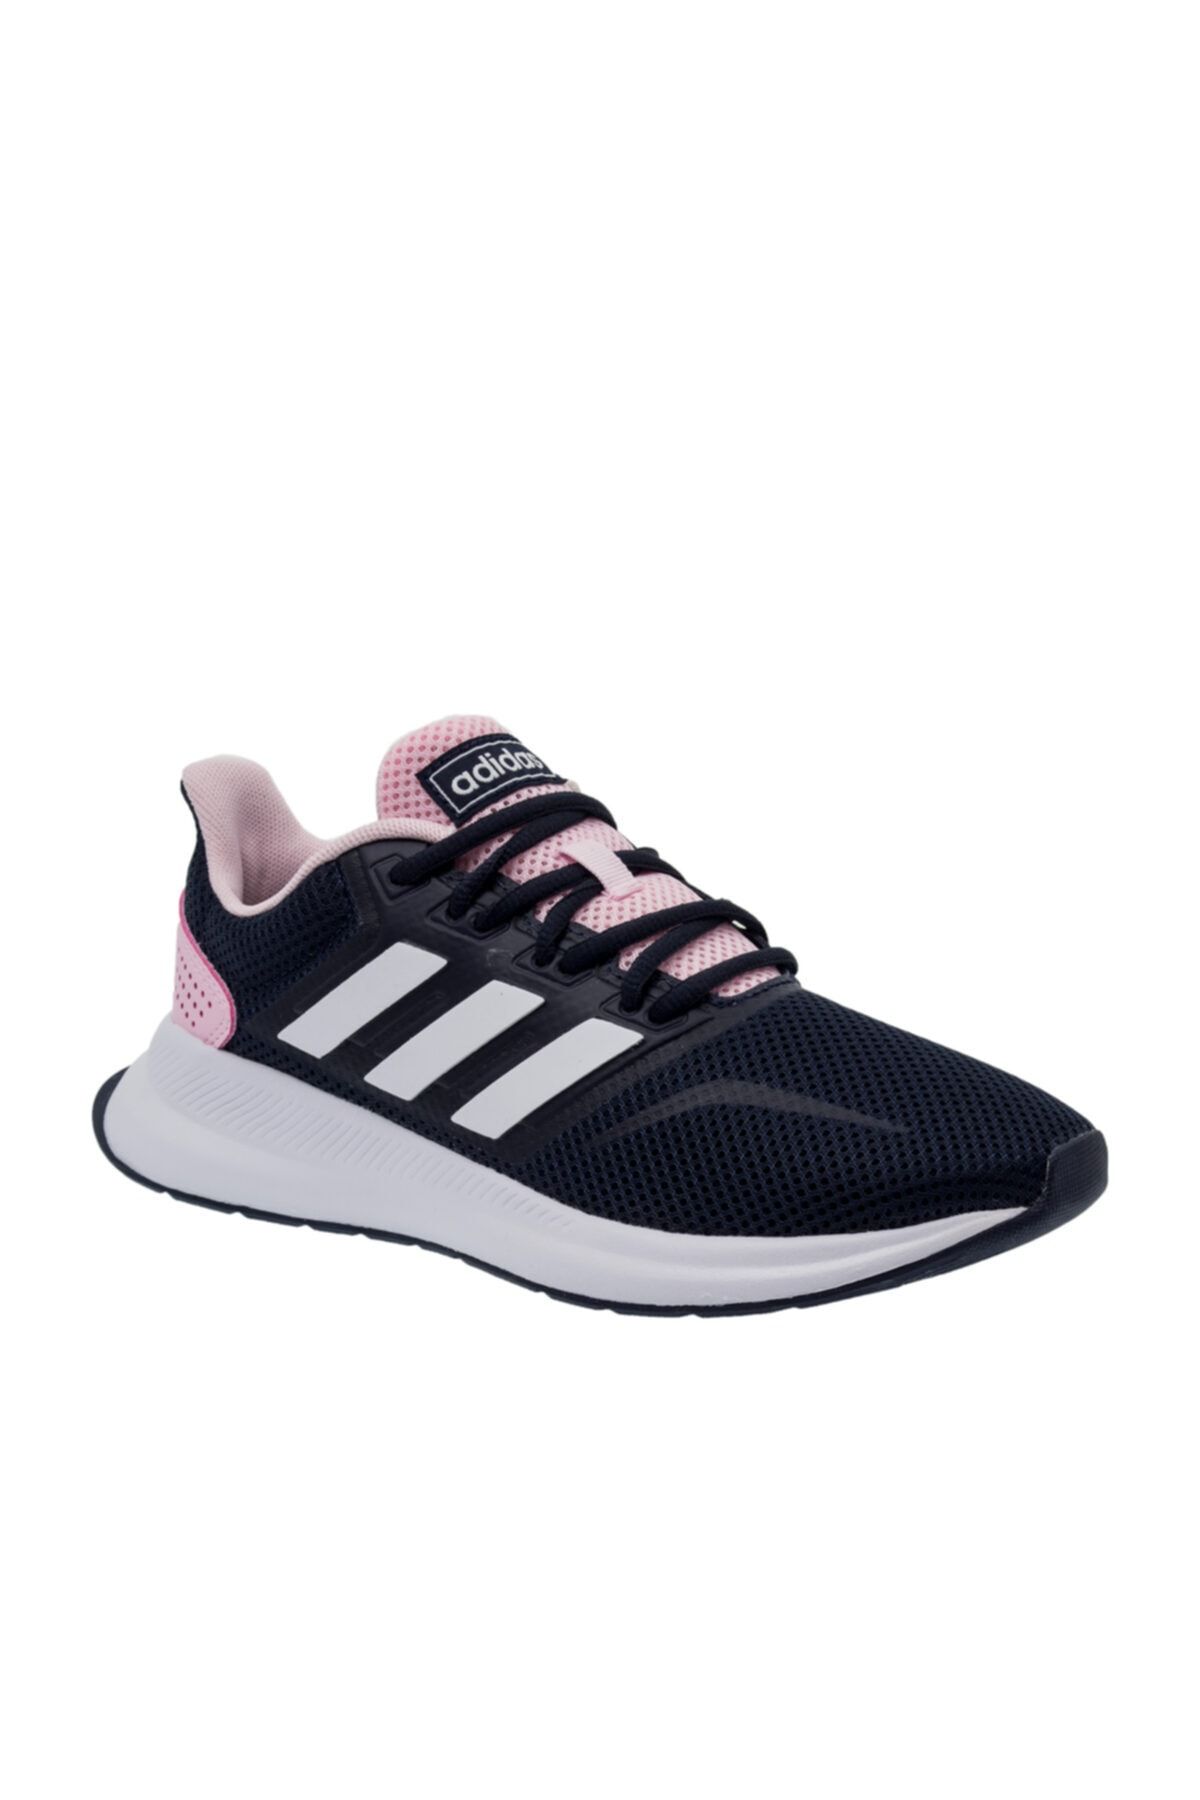 Adidas Runfalcon Siyah Kadın Koşu Ayakkabısı 100479435 Fiyatı